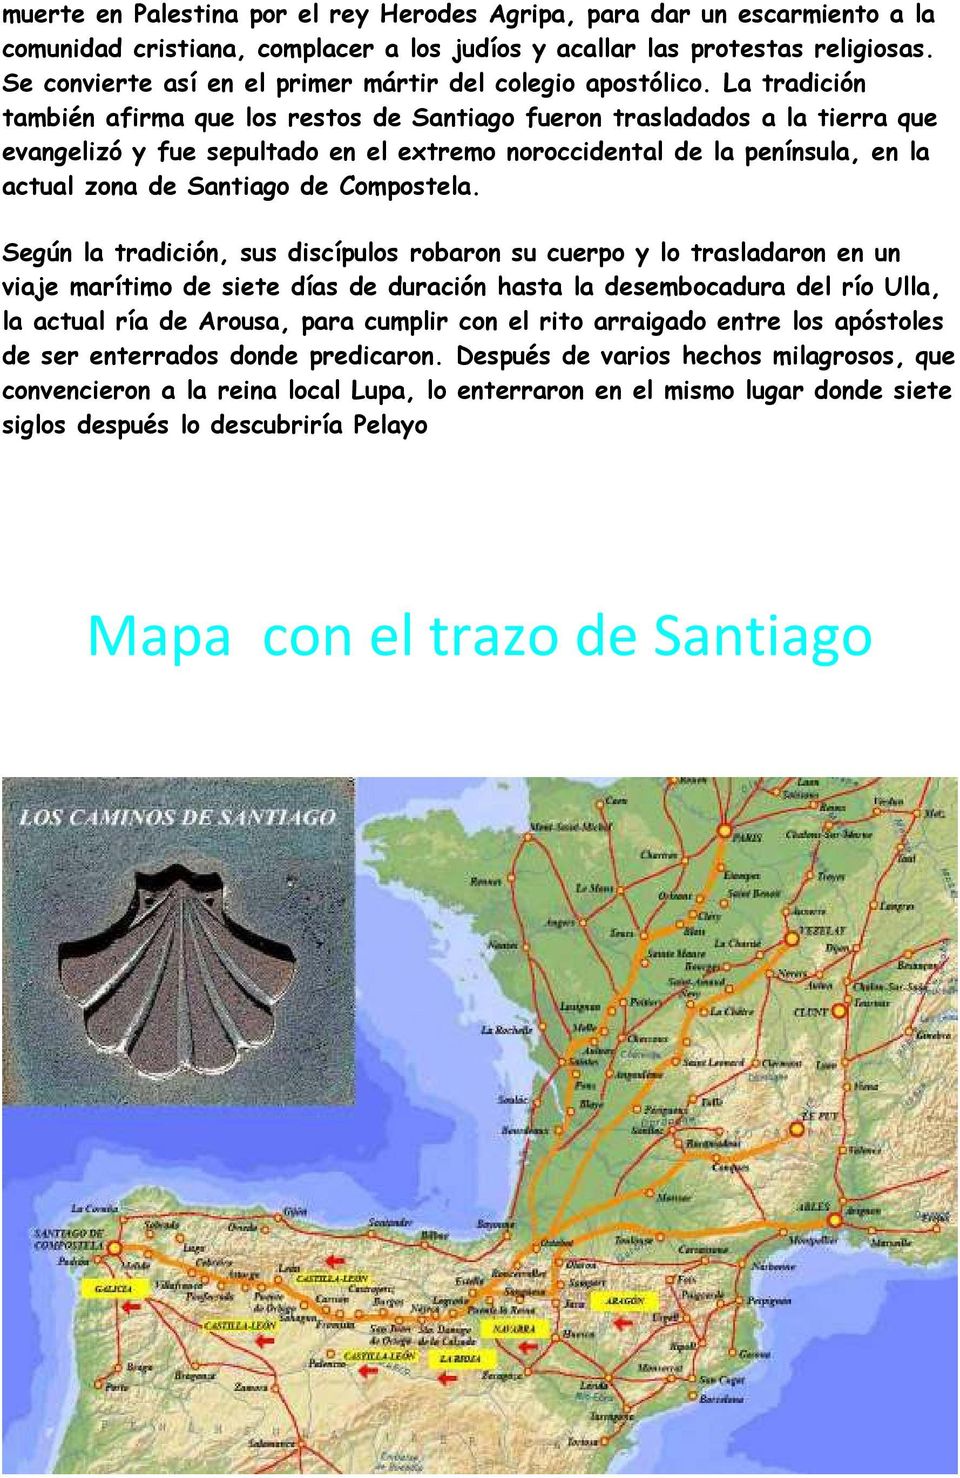 La tradición también afirma que los restos de Santiago fueron trasladados a la tierra que evangelizó y fue sepultado en el extremo noroccidental de la península, en la actual zona de Santiago de